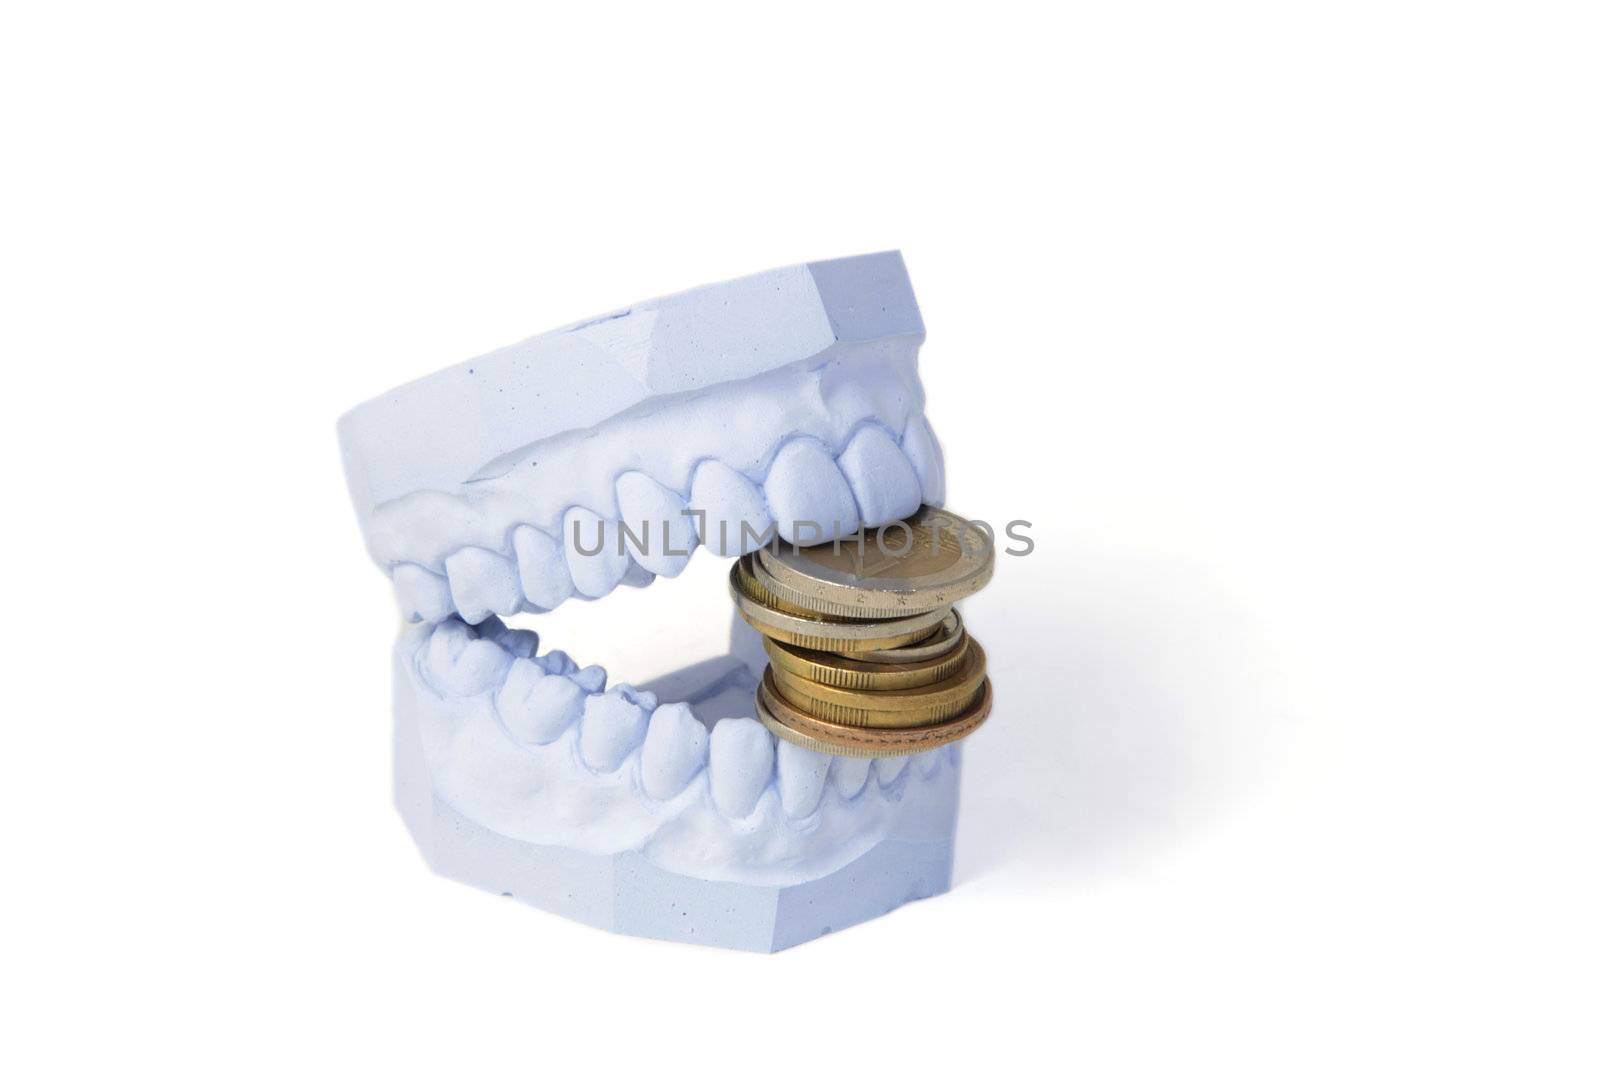 Dentures cost by kaarsten